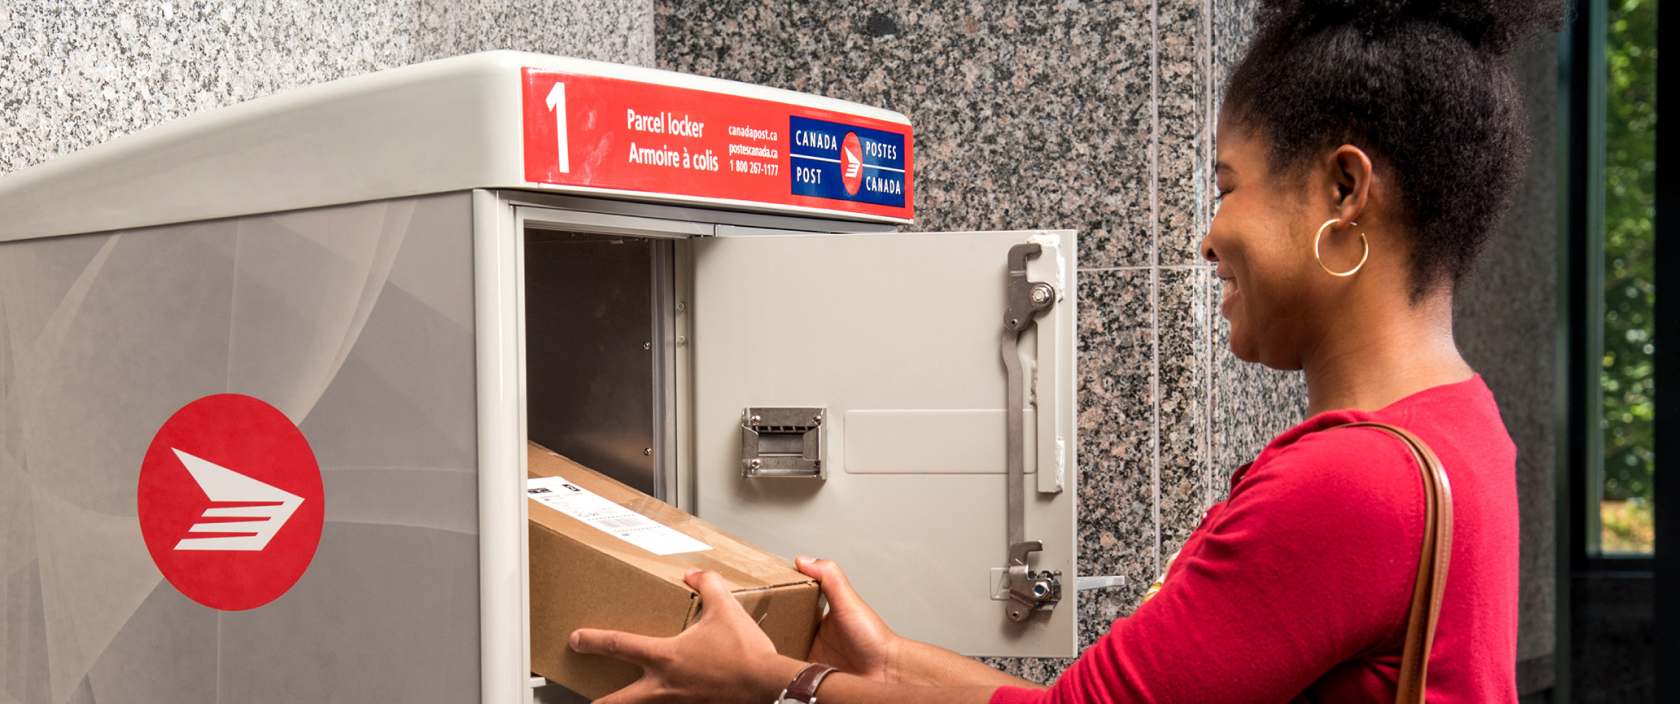 Une femme récupère son colis dans l’casier à colis de Postes Canada dans la salle de courrier de son immeuble d’habitation